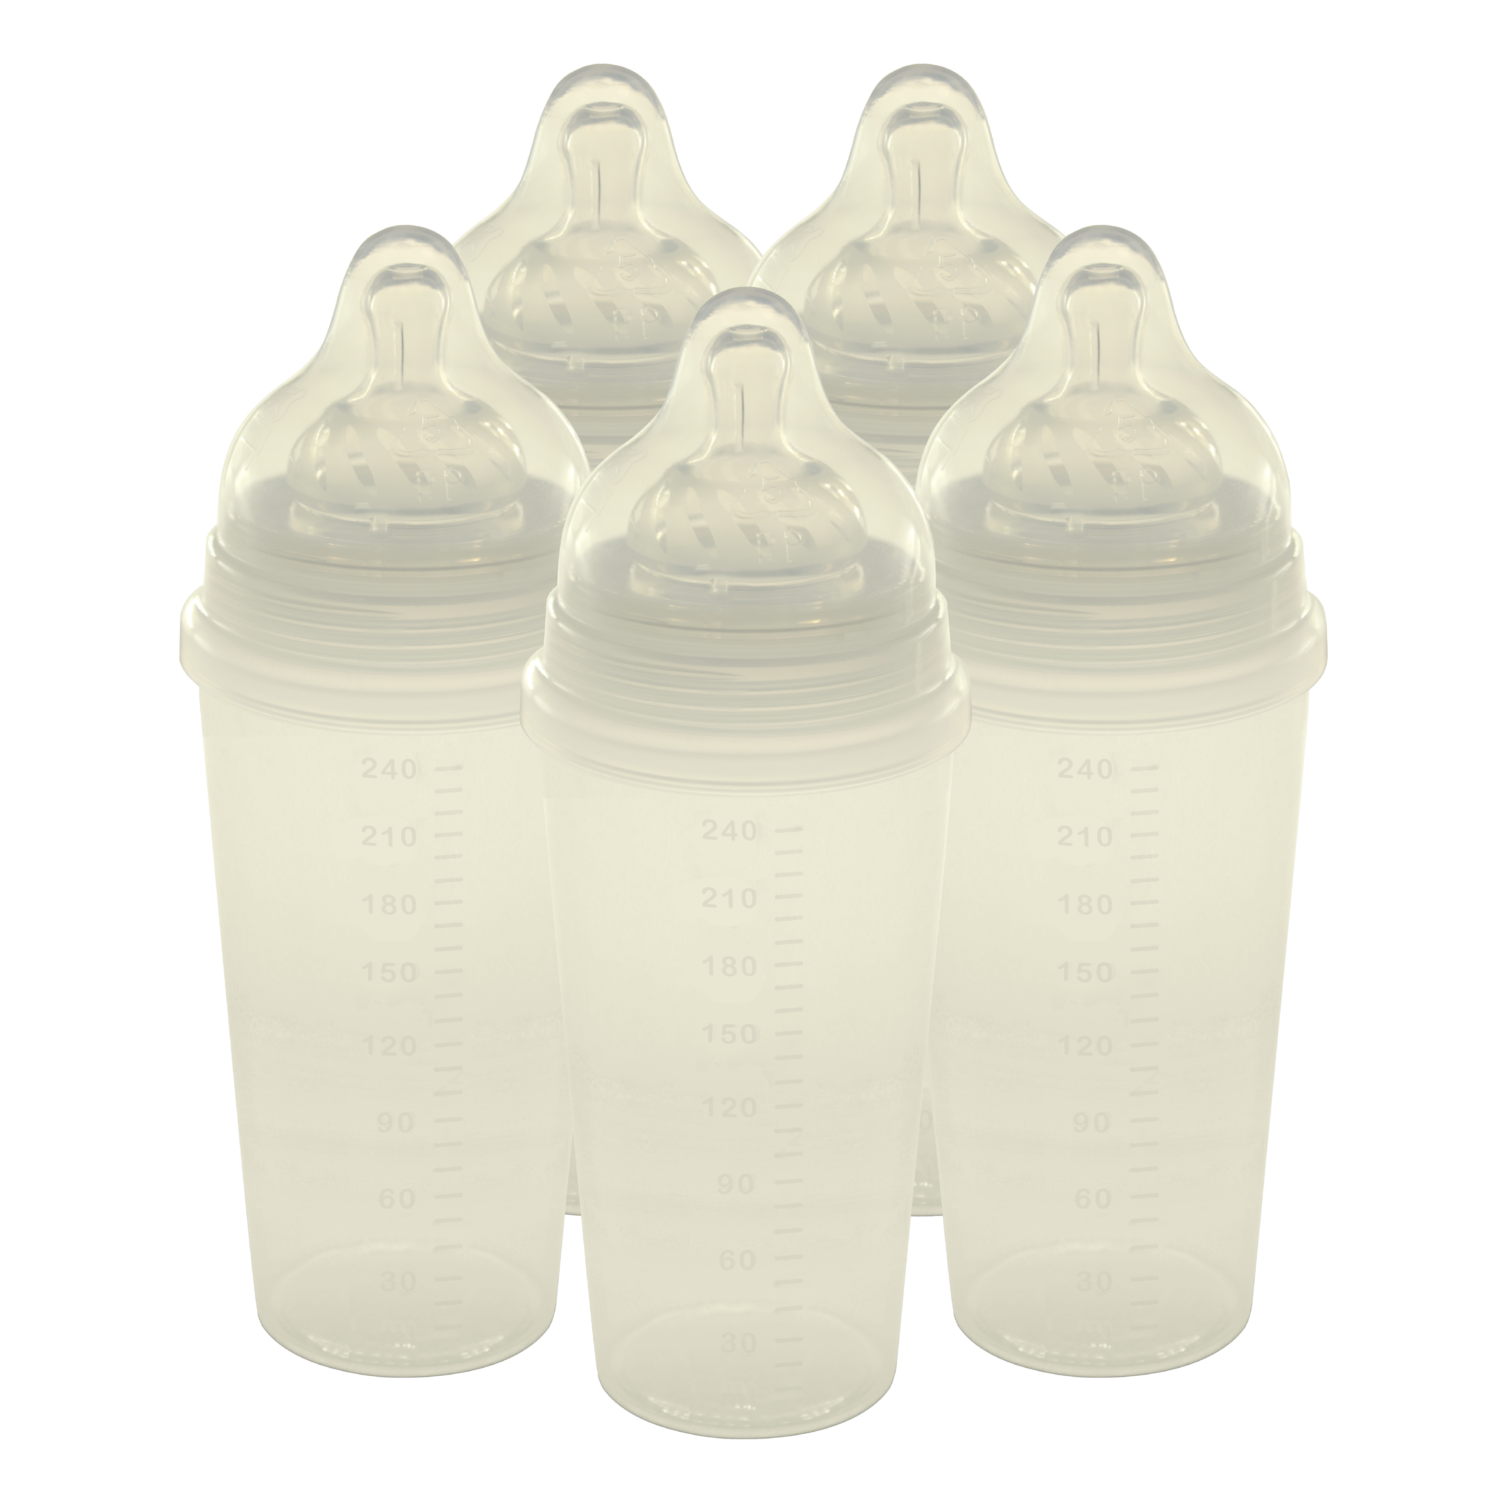 使い捨て哺乳瓶 | クロビスベビー公式サイト